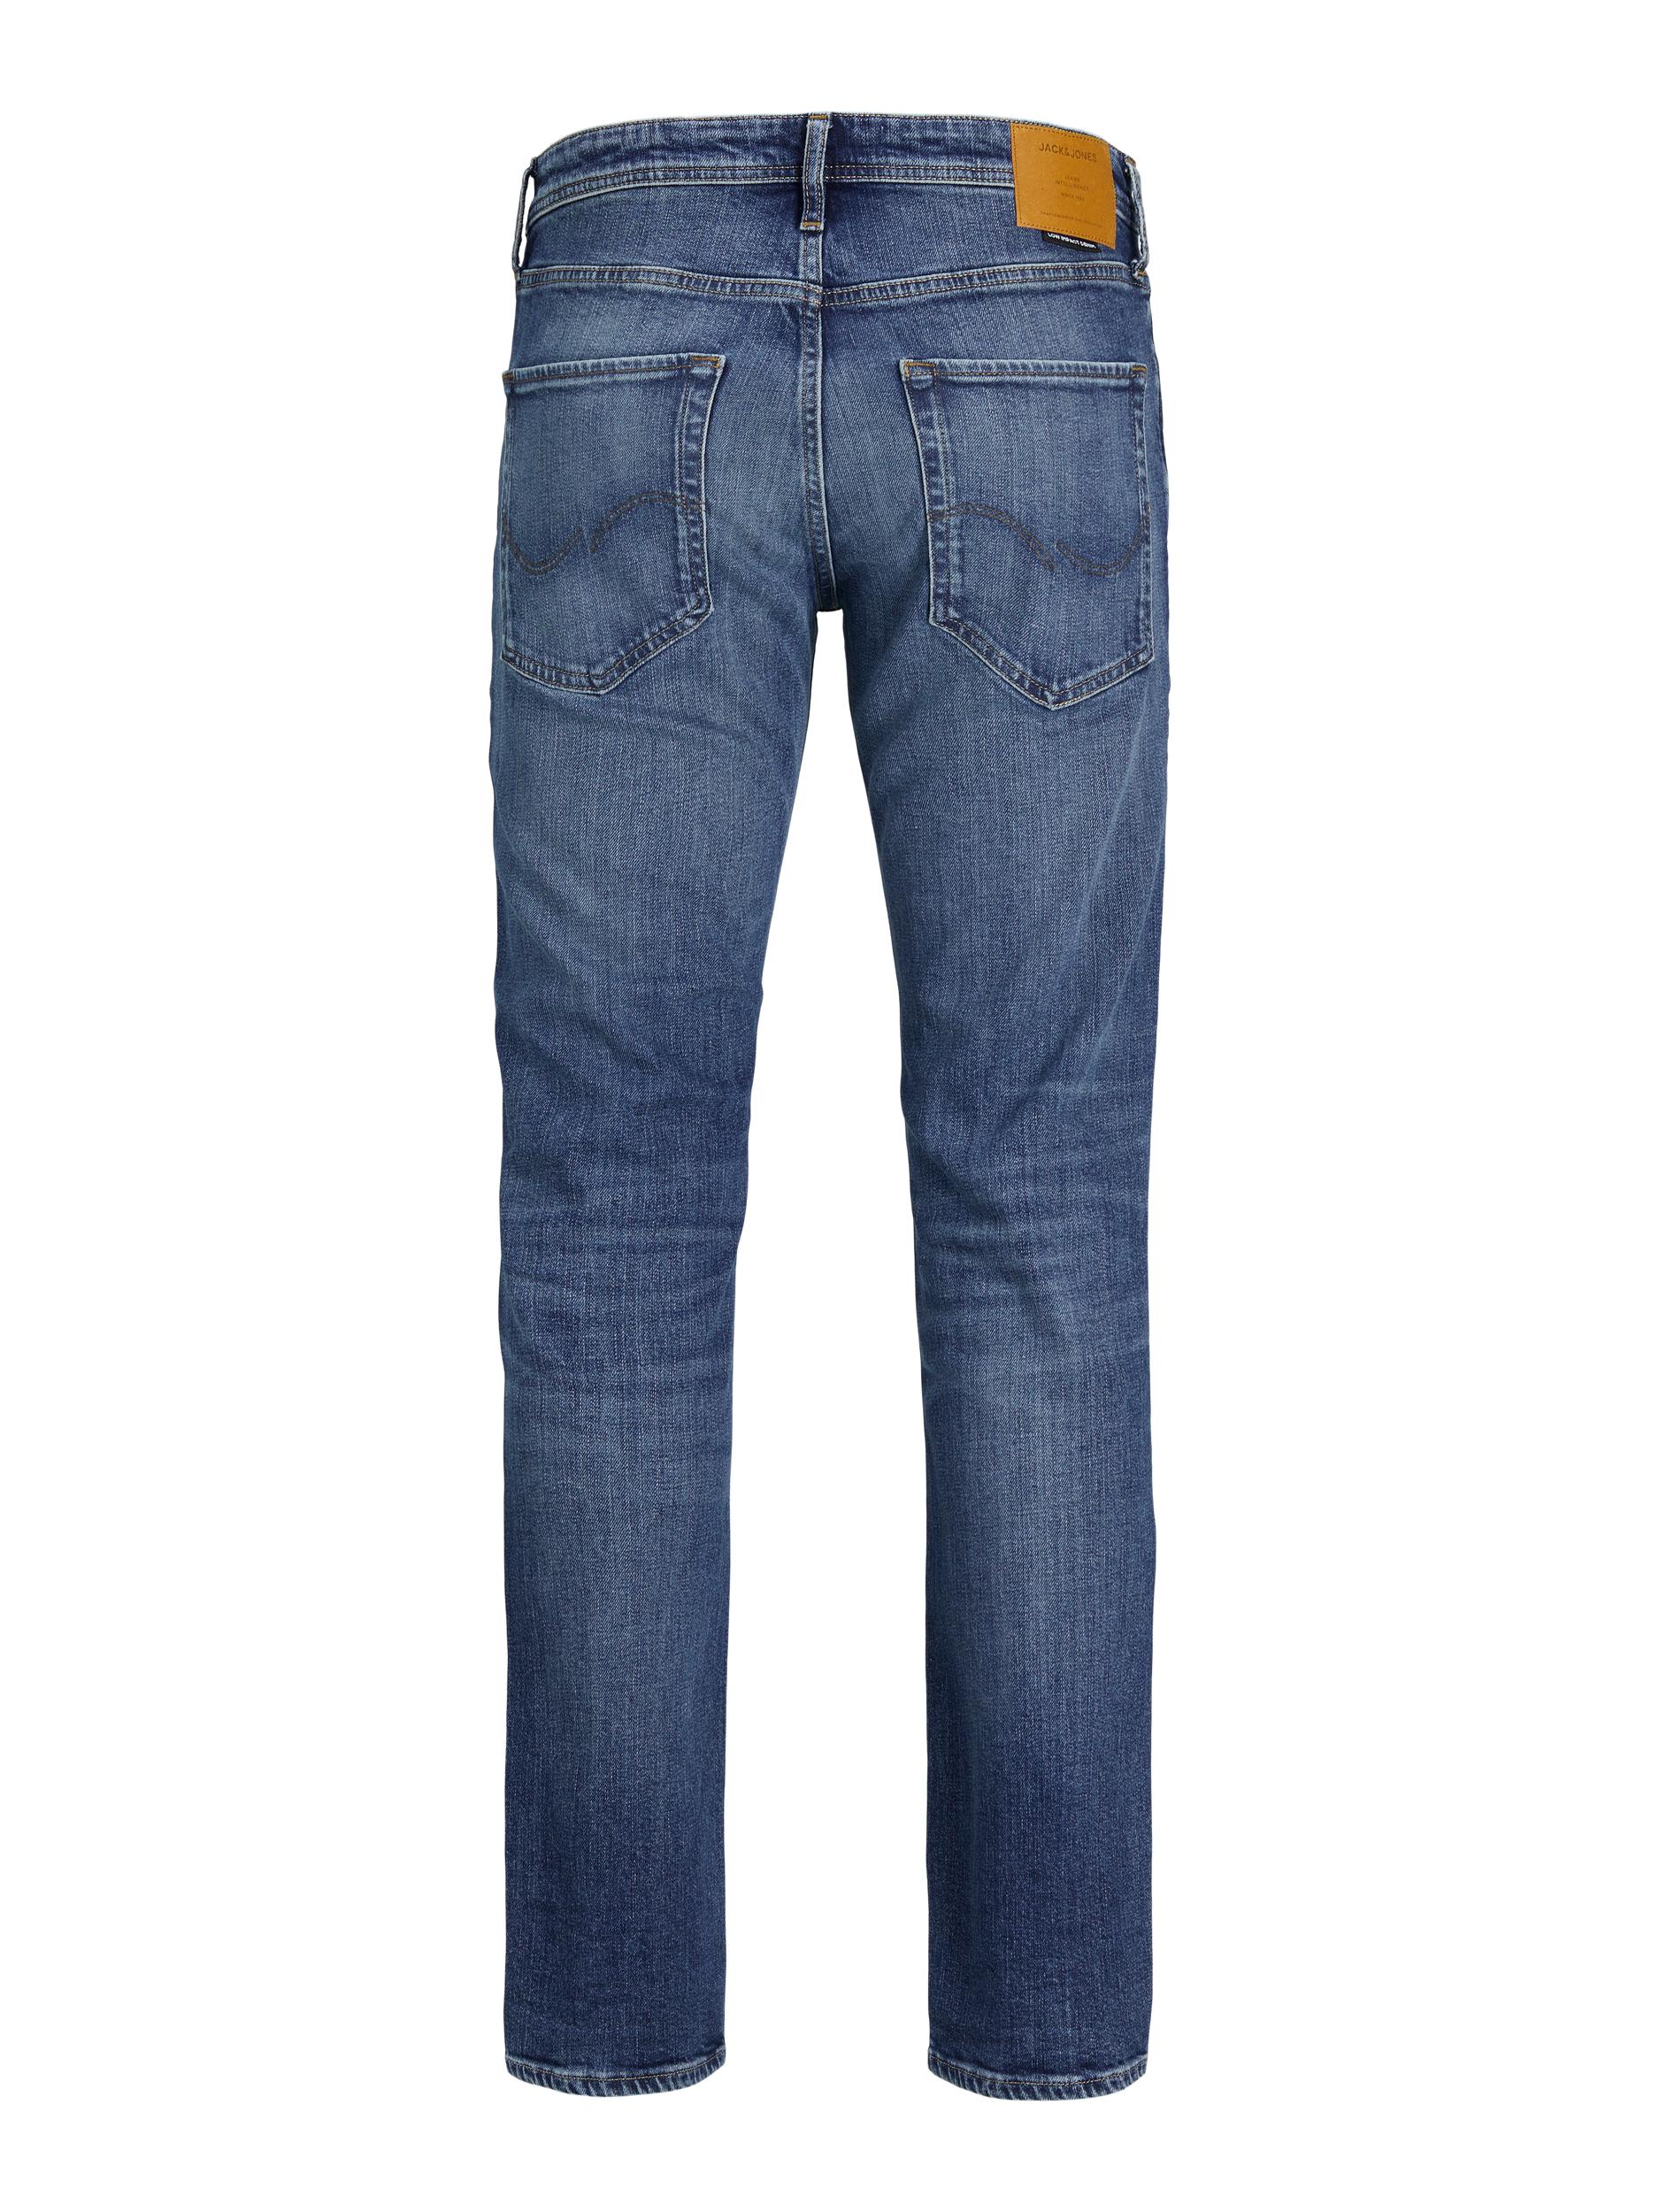  Clark Jeans, Blue Denim, W32/L34